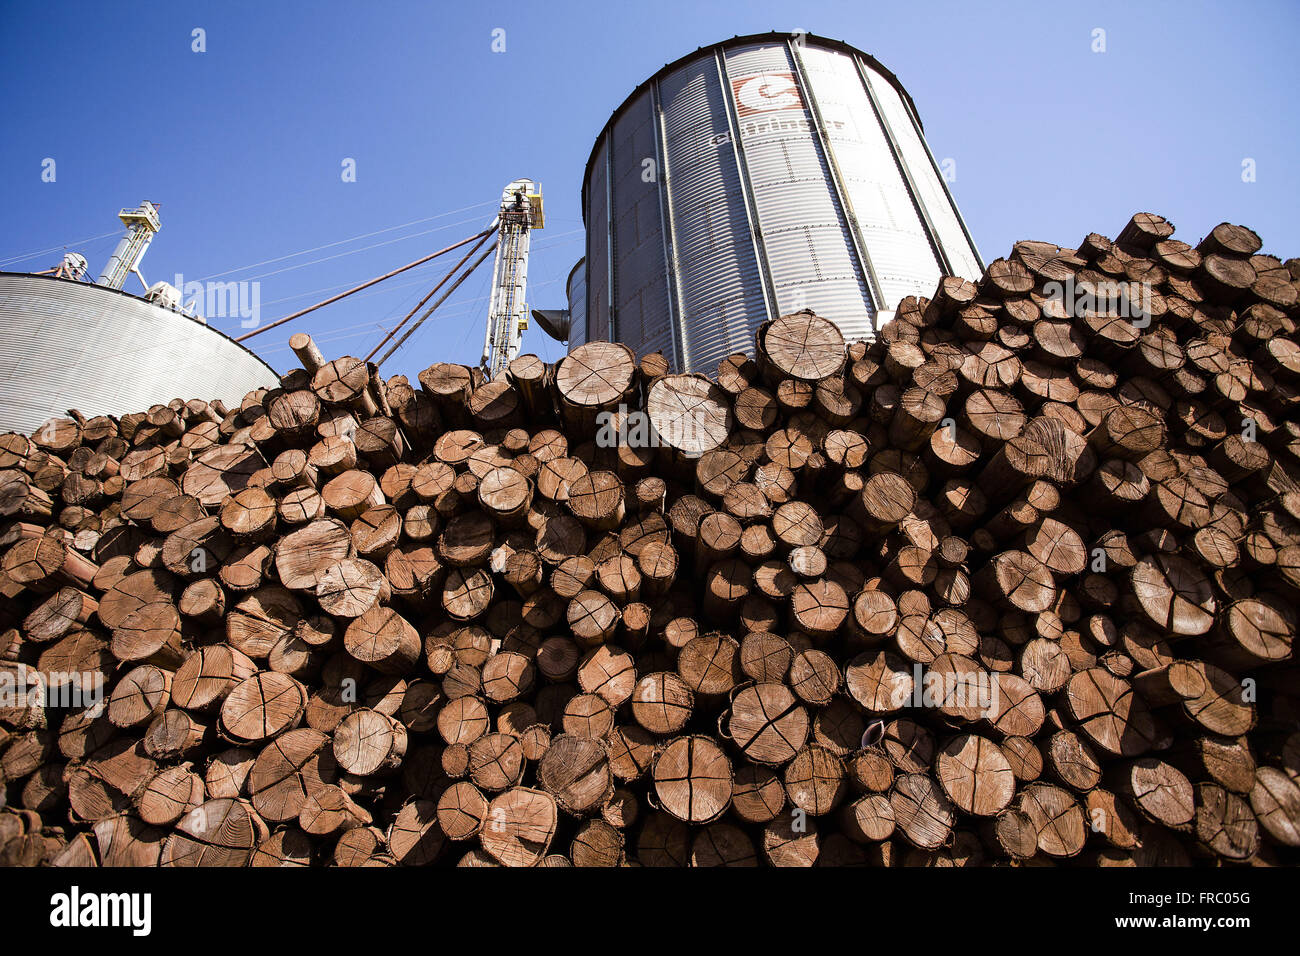 Le bois utilisé dans les silos de stockage de céréales de l'industrie alimentaire Banque D'Images